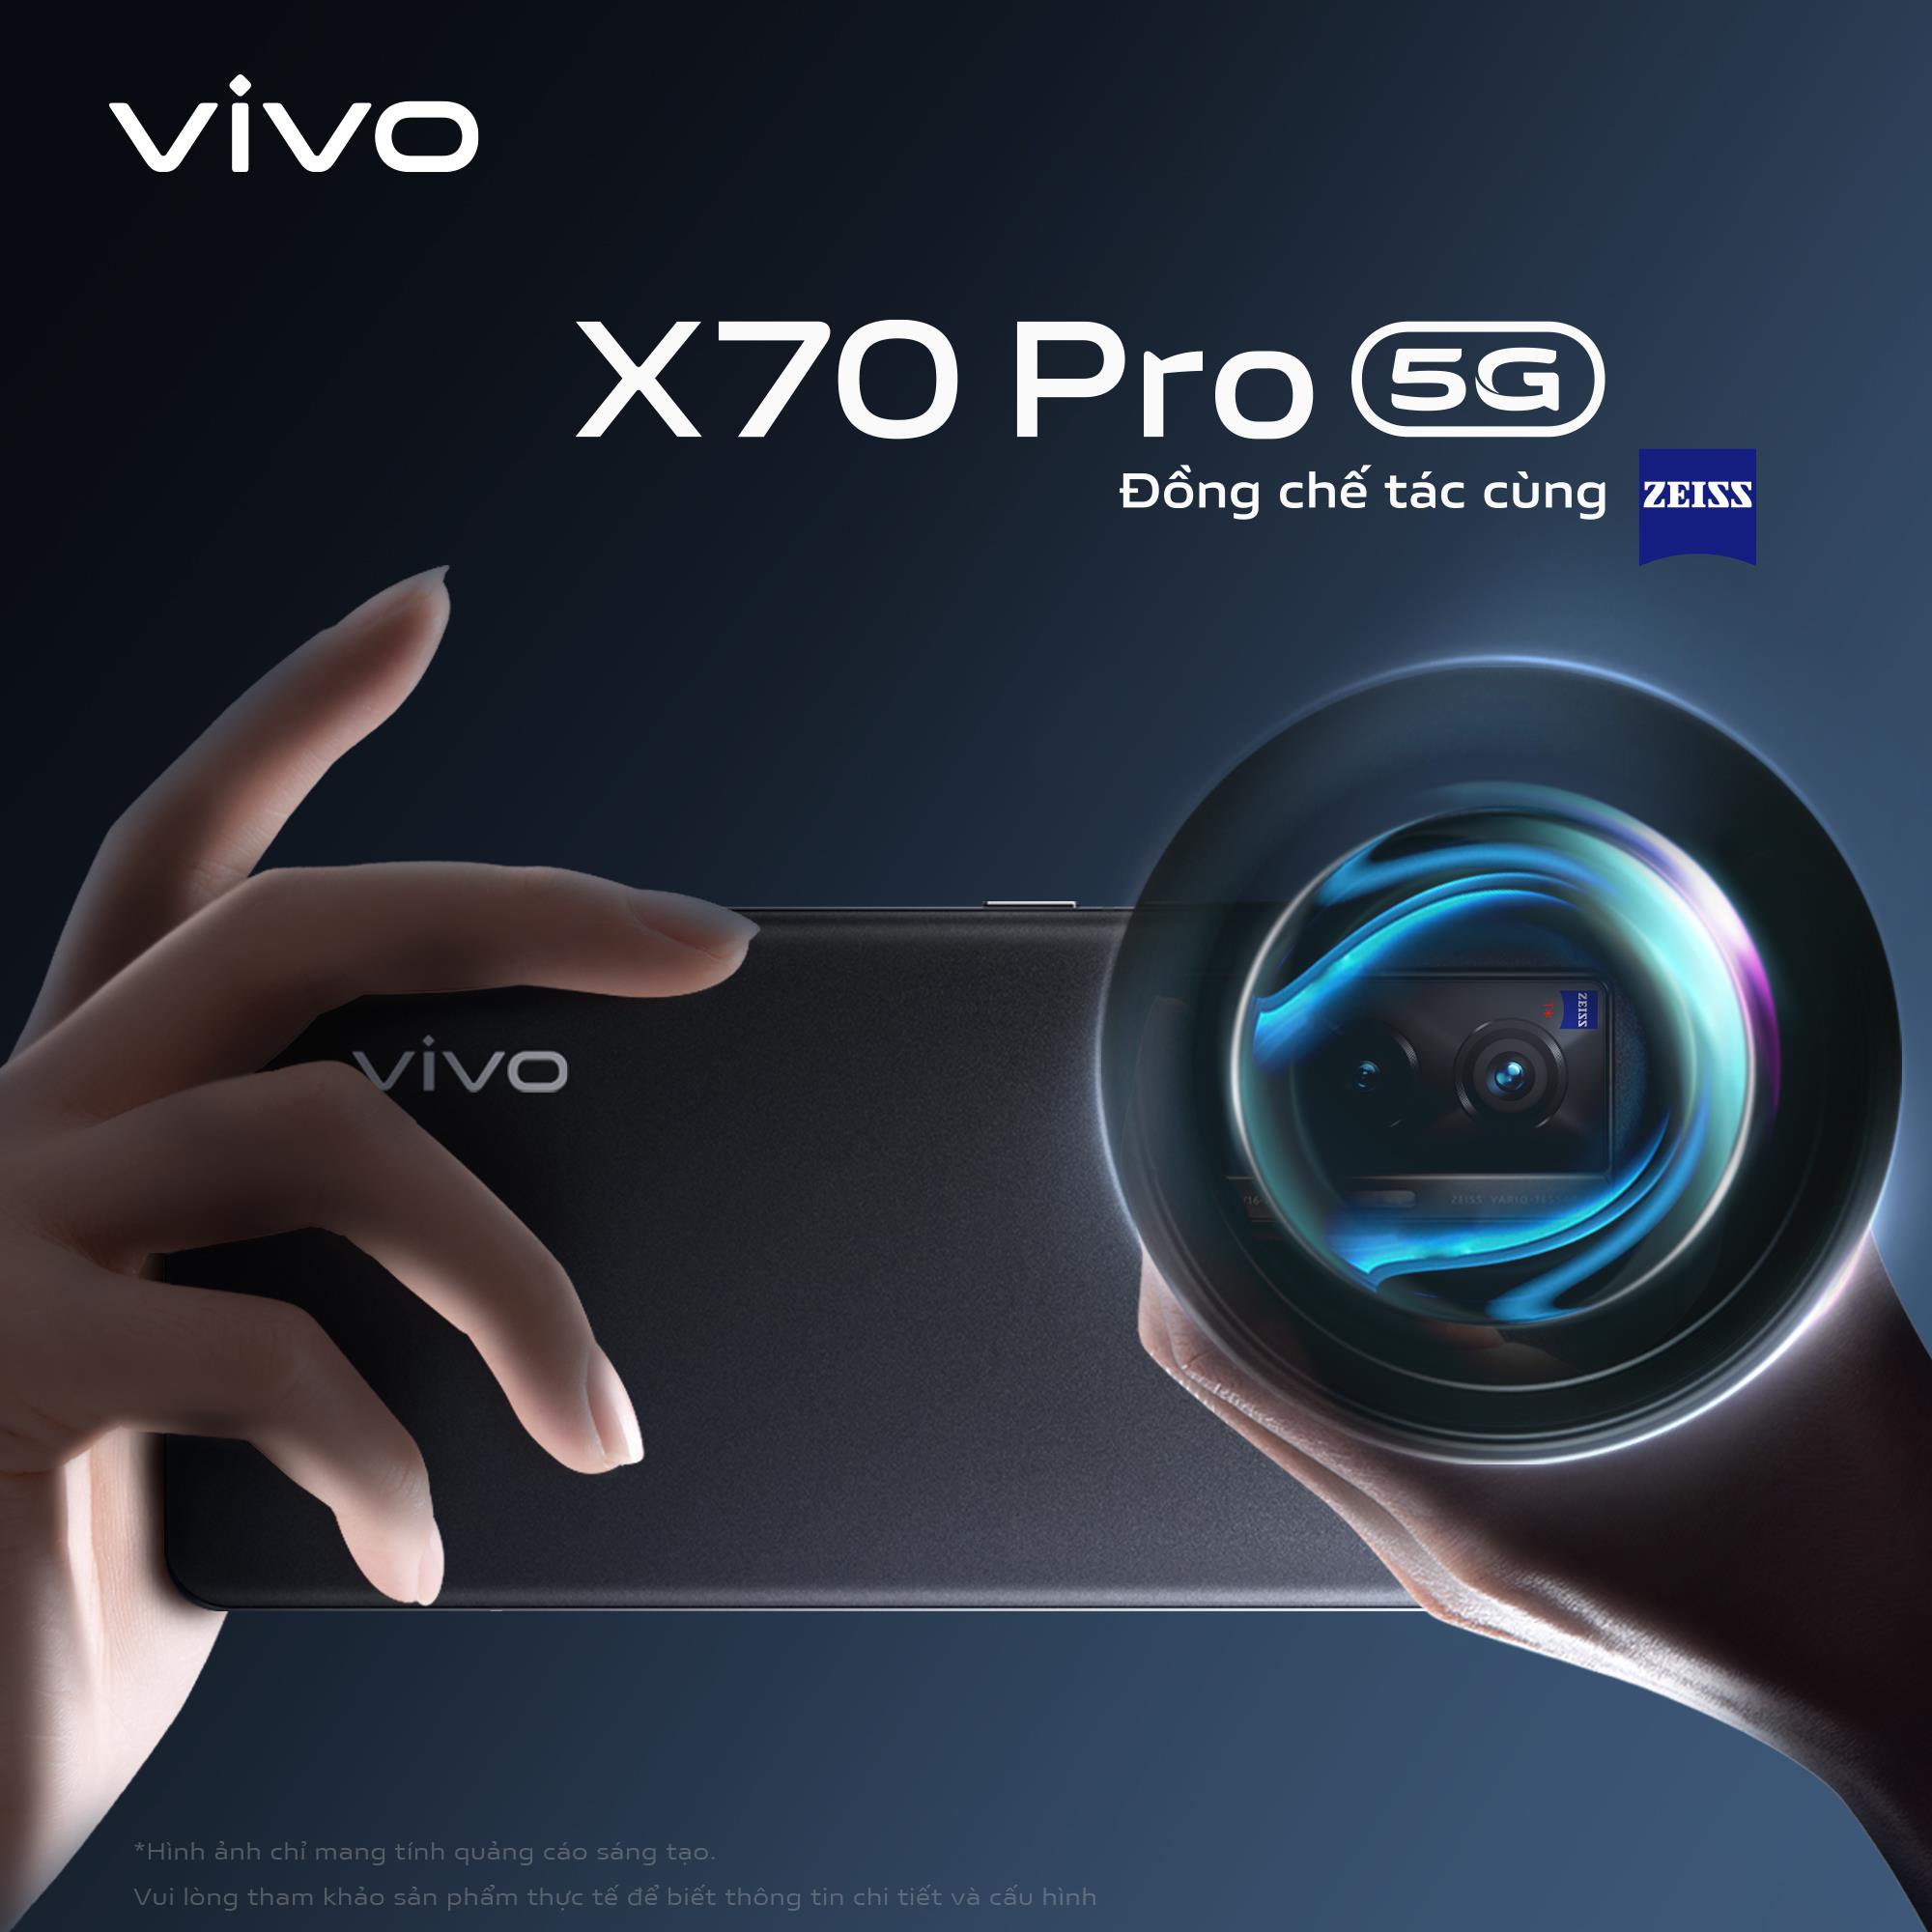 Những cách tân của vivo X80 series nhằm nâng cao trải nghiệm hình ảnh người dùng - Ảnh 3.